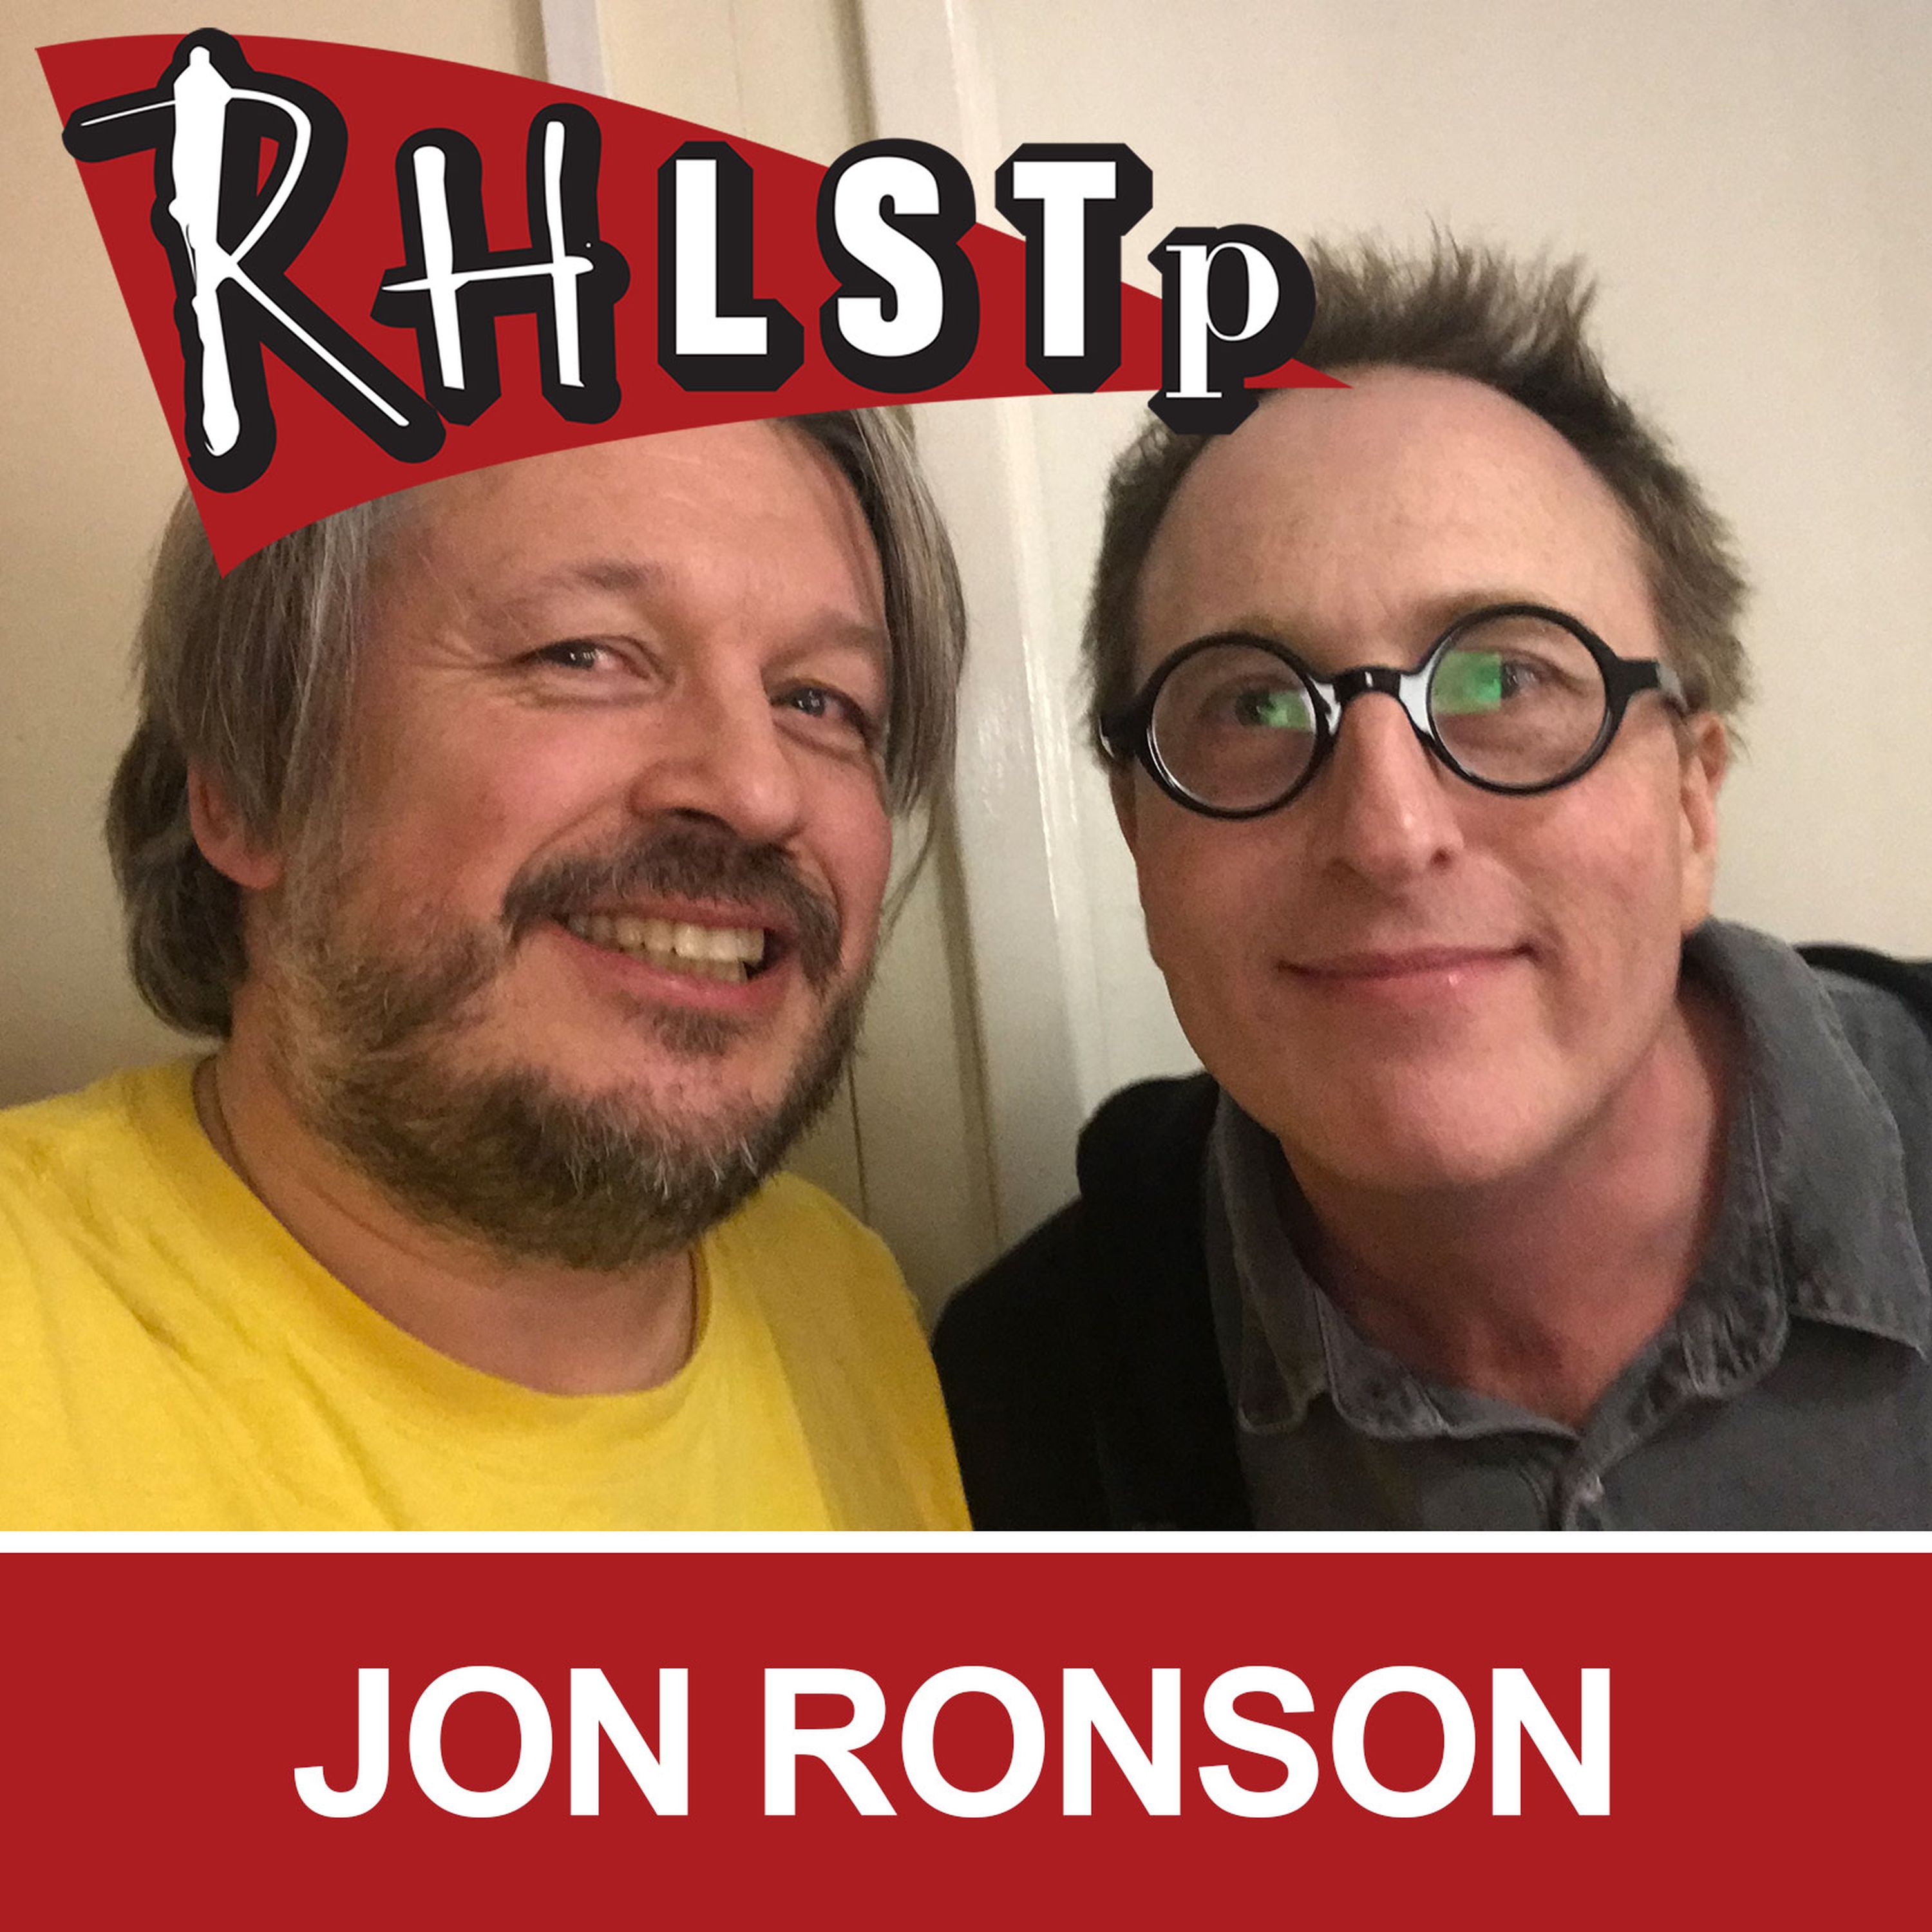 RHLSTP 202 - Jon Ronson - RHLSTP with Richard Herring | Lyssna hÃ¤r ...